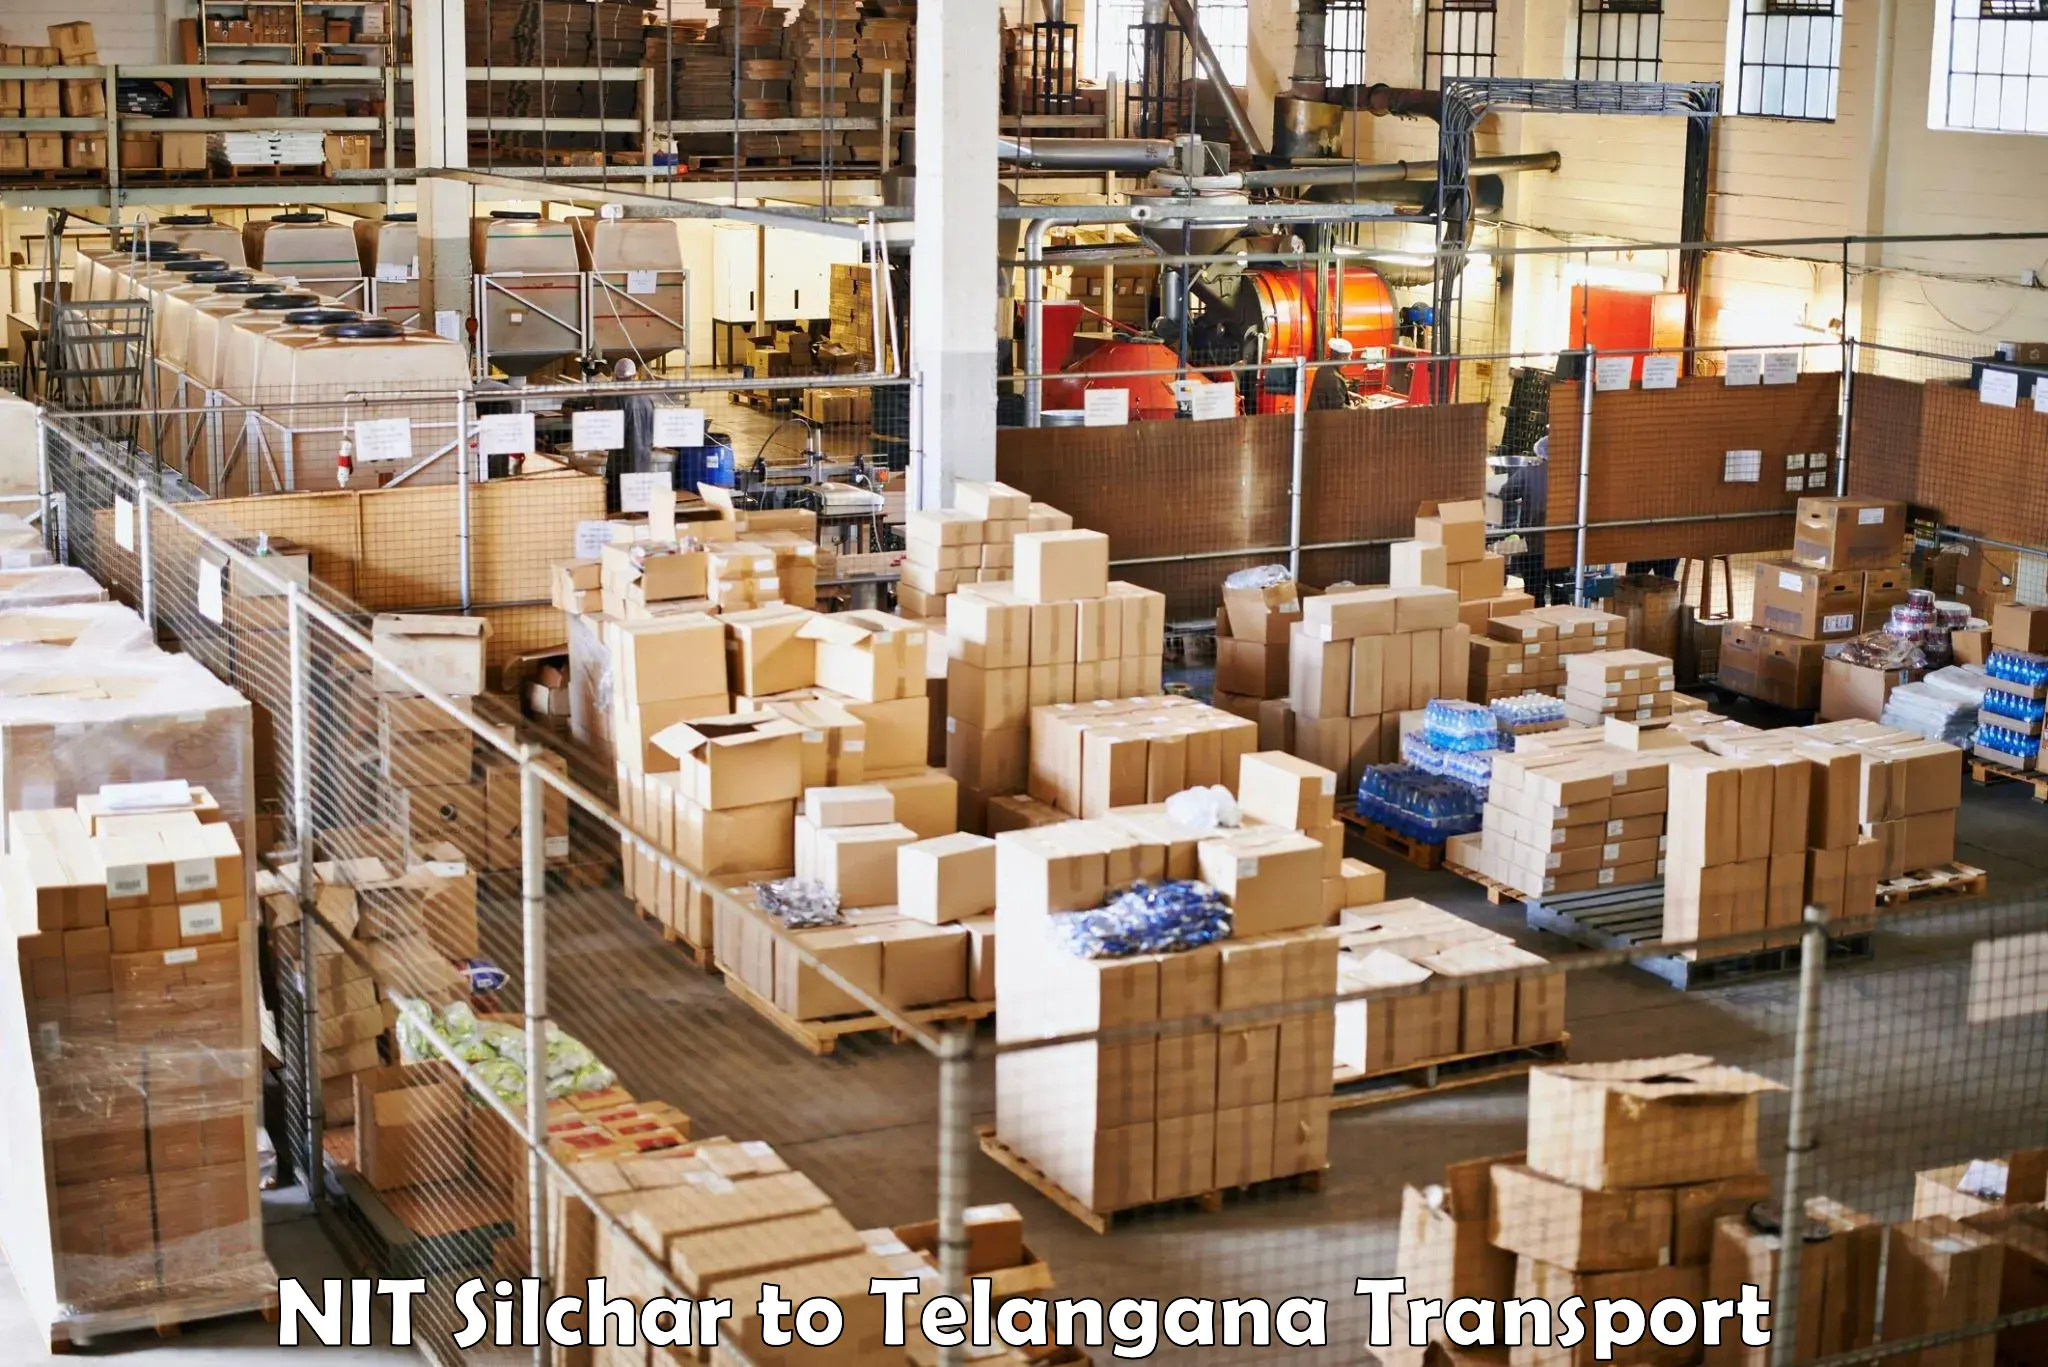 Furniture transport service NIT Silchar to Rayaparthi